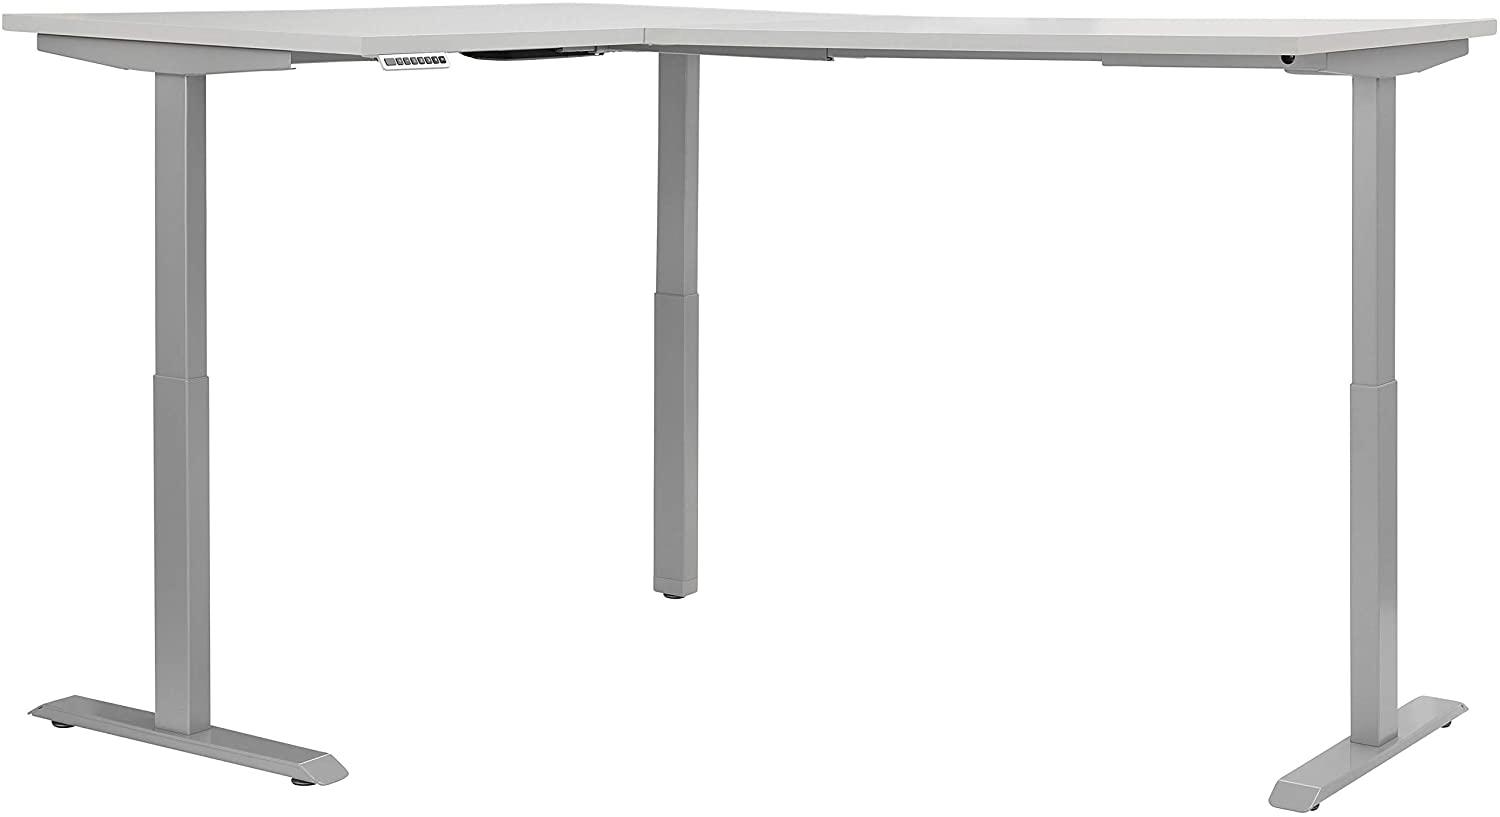 Schreibtisch "5514" aus Metall / Spanplatte in Metall platingrau - platingrau. Abmessungen (BxHxT) 200x120x150 cm Bild 1